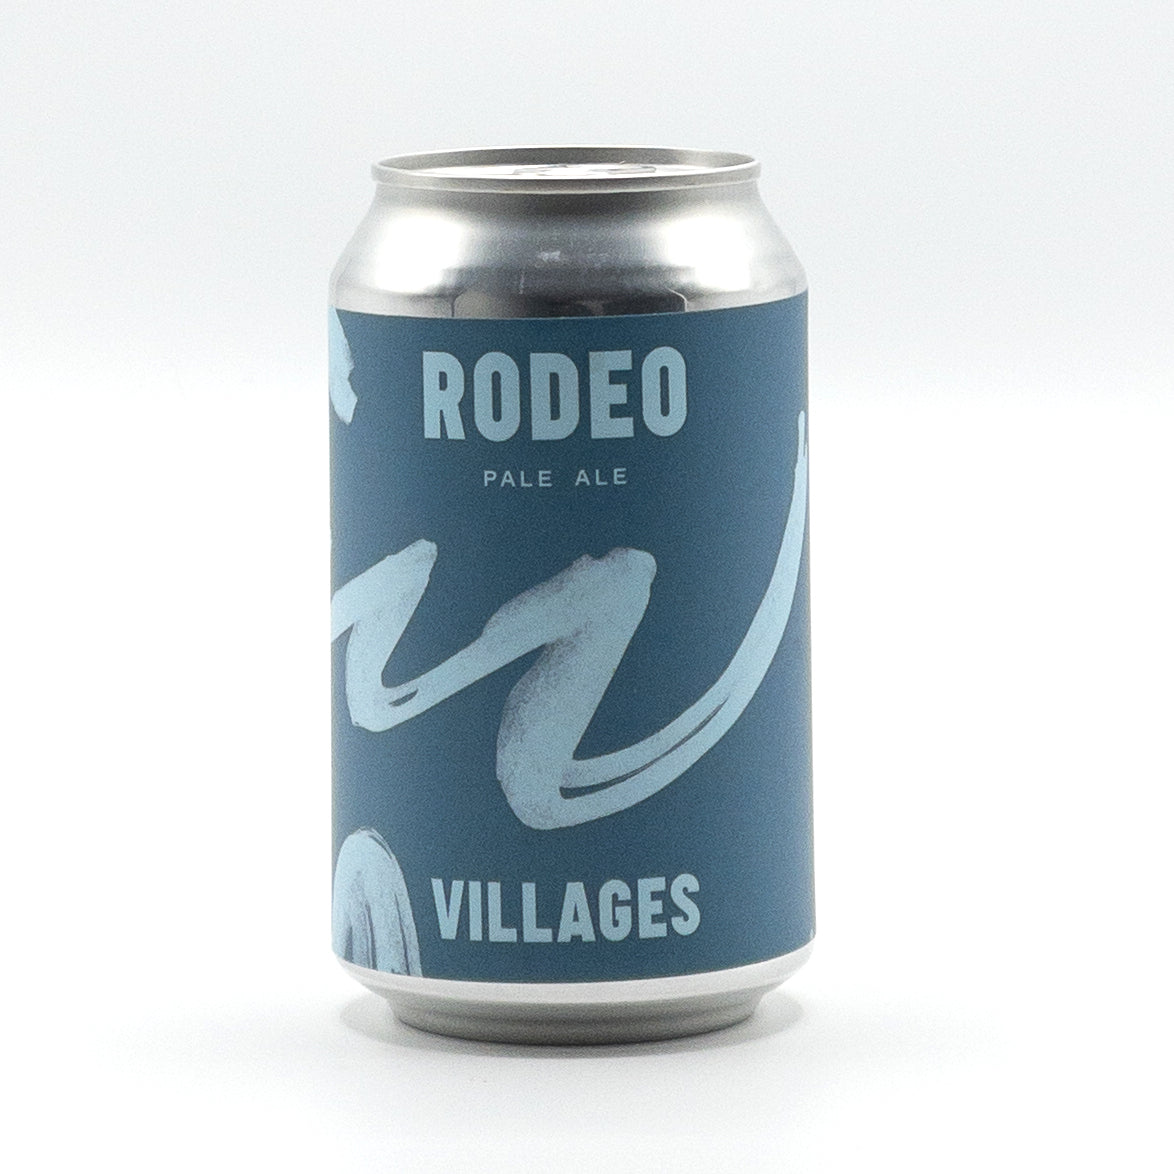 Villages Rodeo Pale Ale